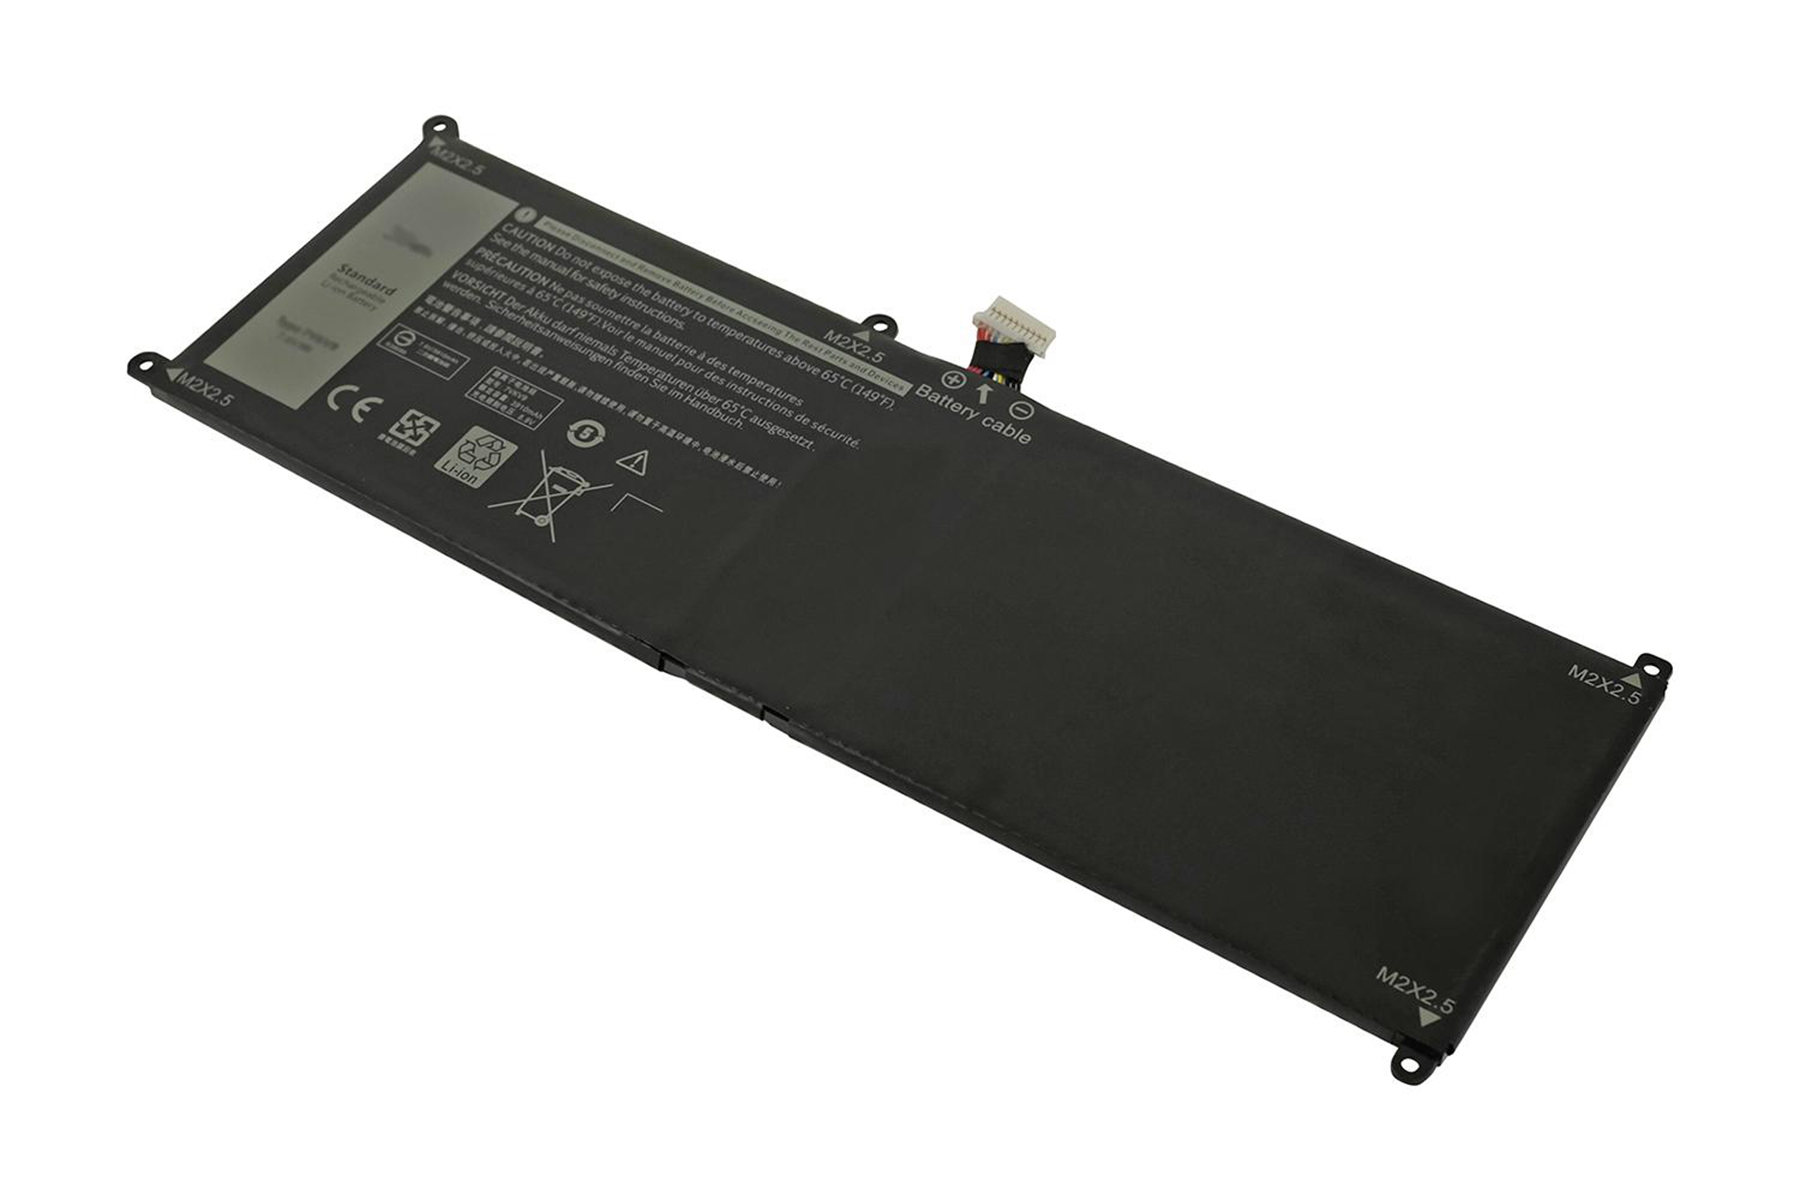 Volt, 7.60 9TV5X Akku, POWERSMART für Laptop 4000 mAh Dell 09TV5X Li-Polymer